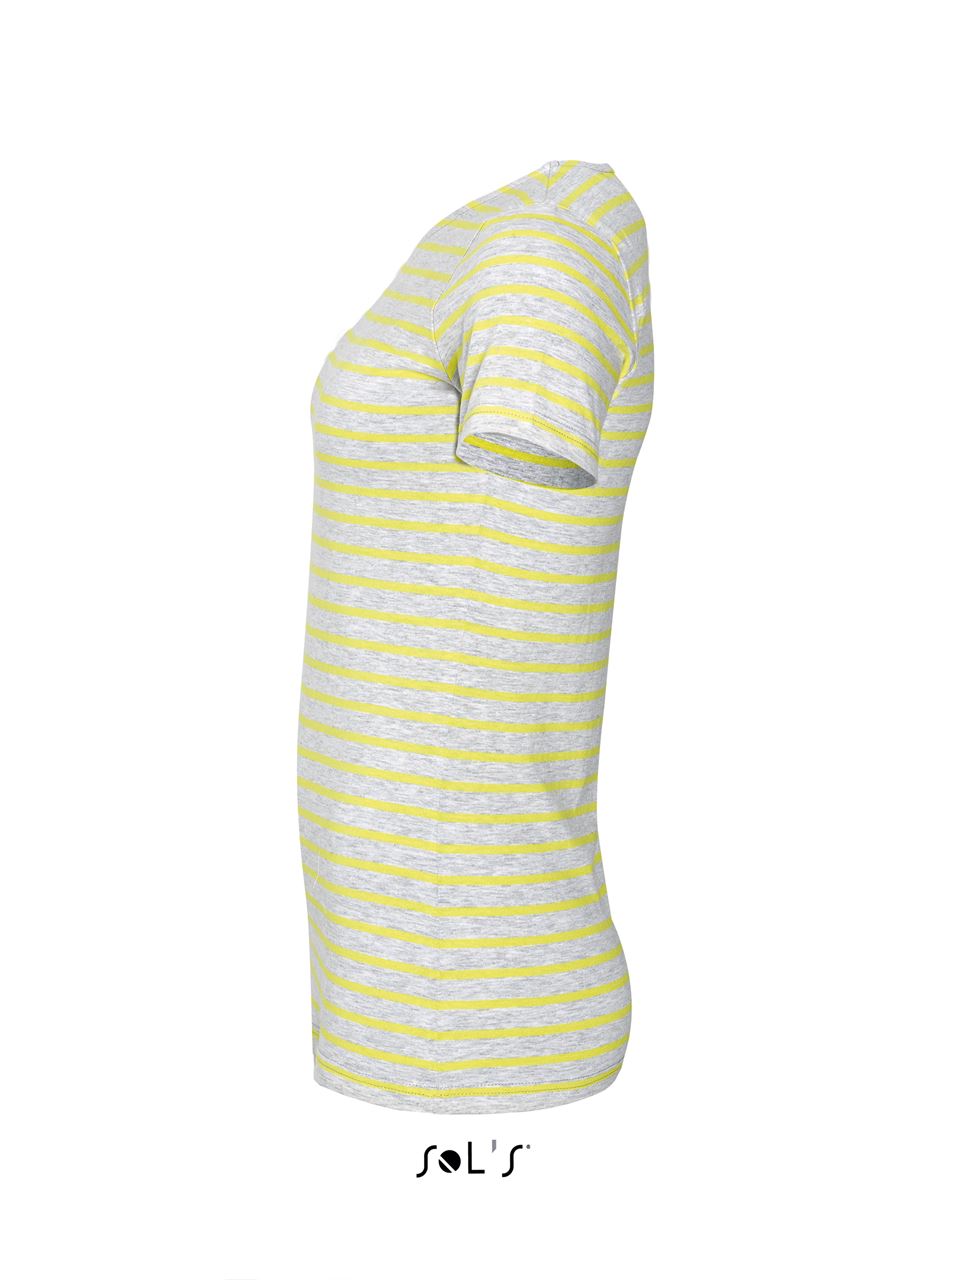 SOL'S Damen T-Shirt Round Neck Striped Kurzarm Baumwolle Basic